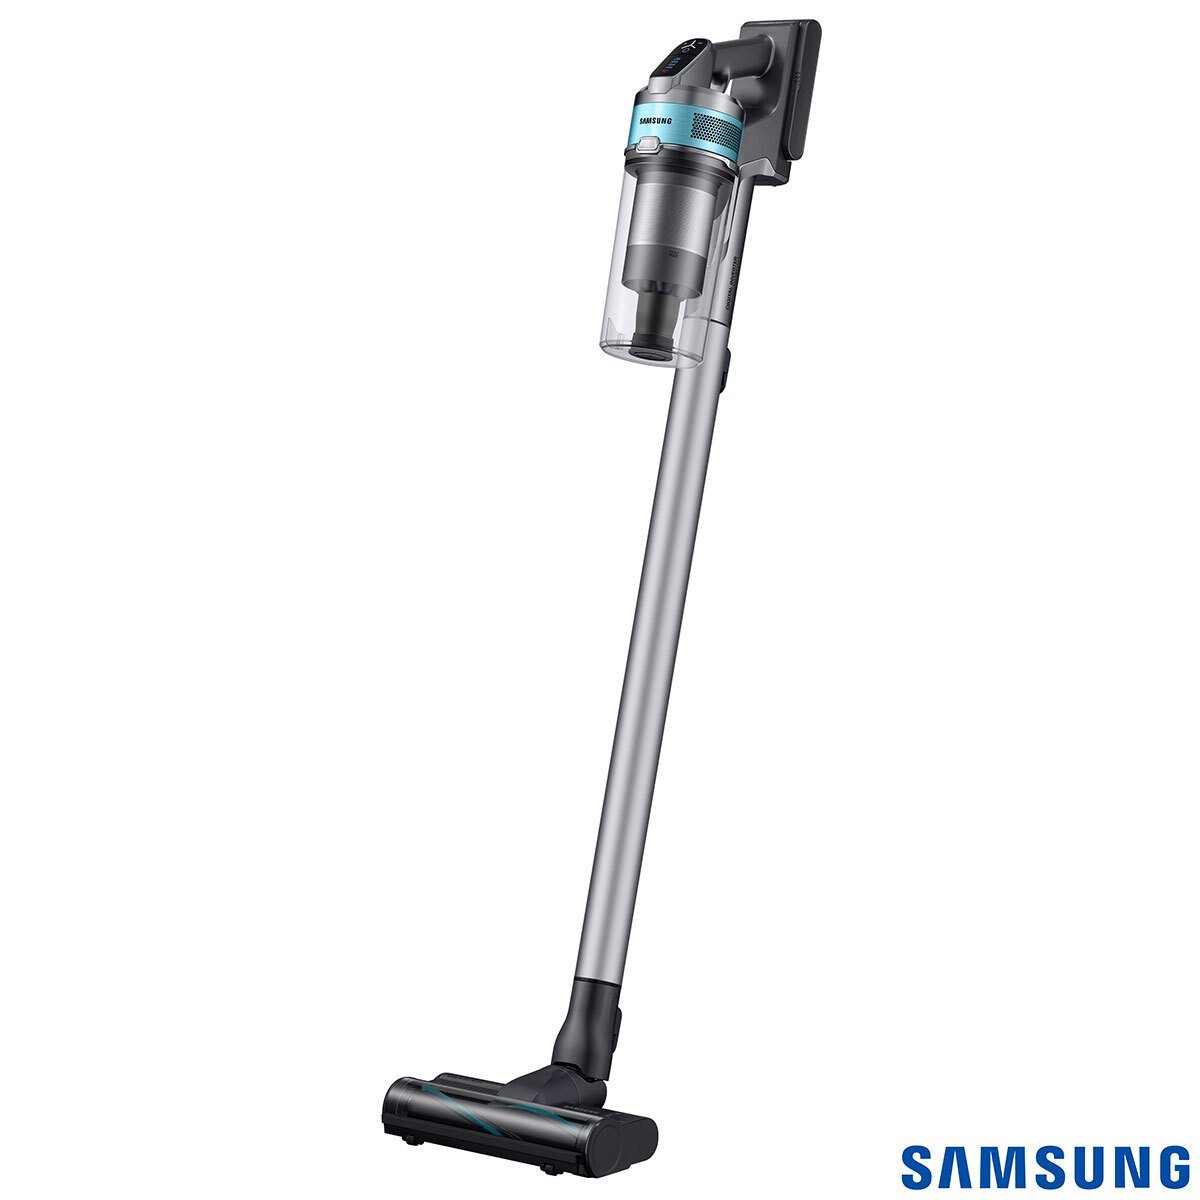 Samsung Jet 75 Pet Vacuum Cleaner, VS20T7532T1/EU - Signature Retail Stores